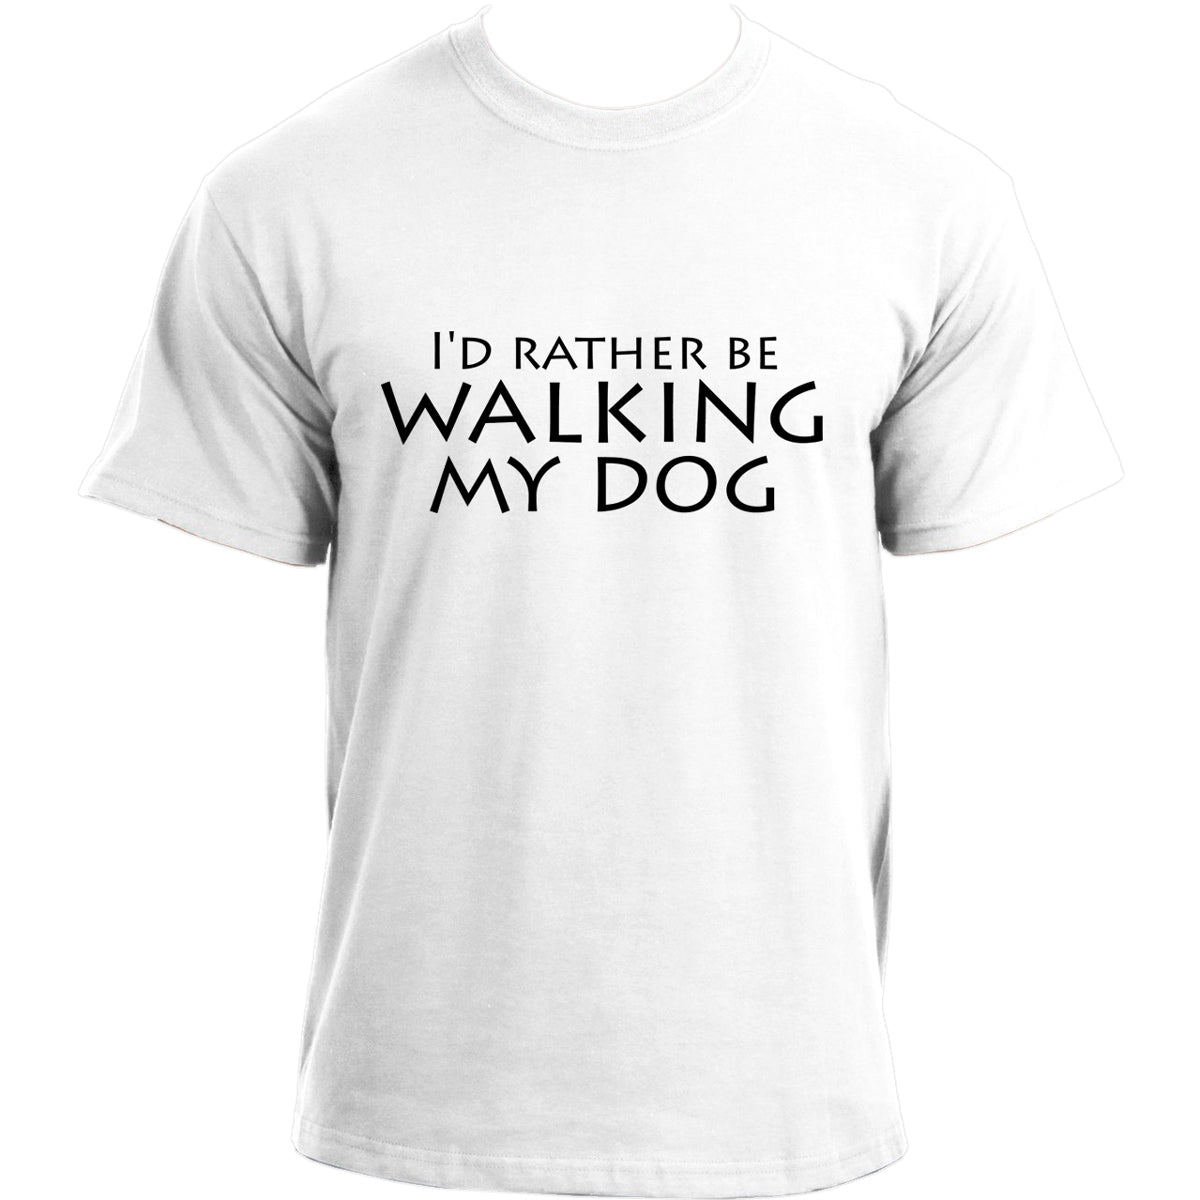 I'd rather be walking my dog T-shirt I Dog Owner TShirt I Dog Dad Funny T-shirts For Men